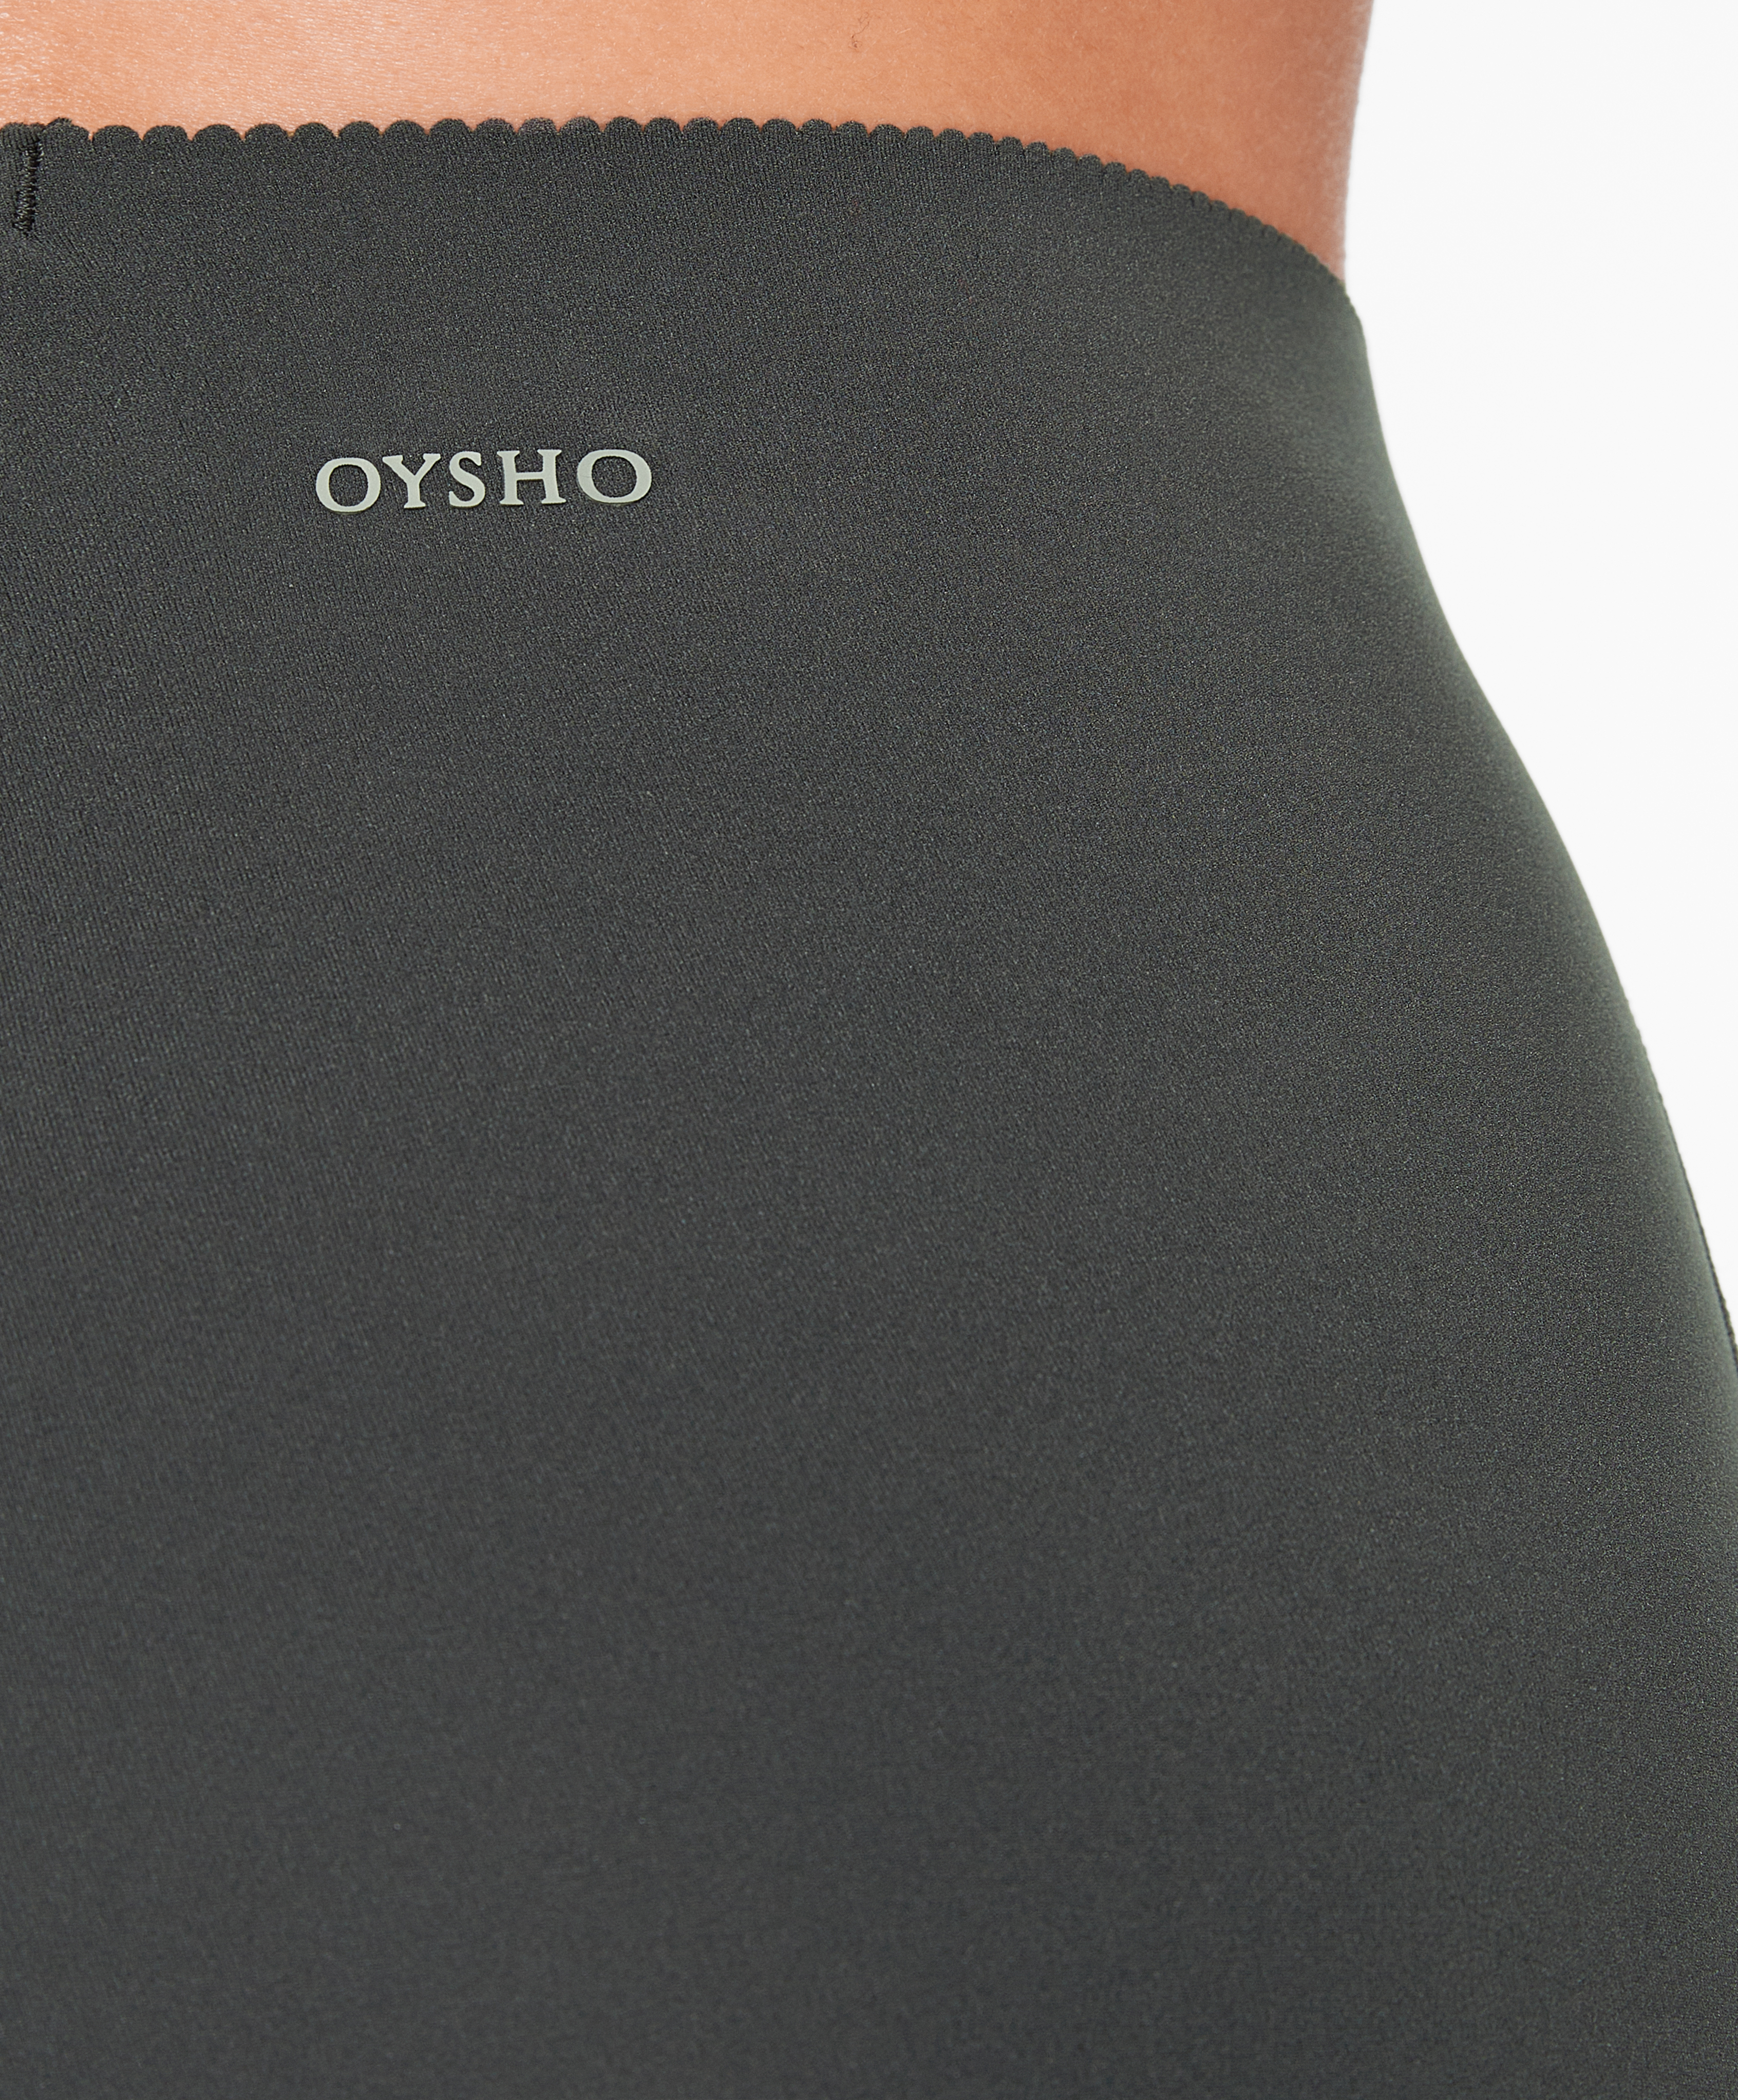 Oysho colourblock full length leggings in multi